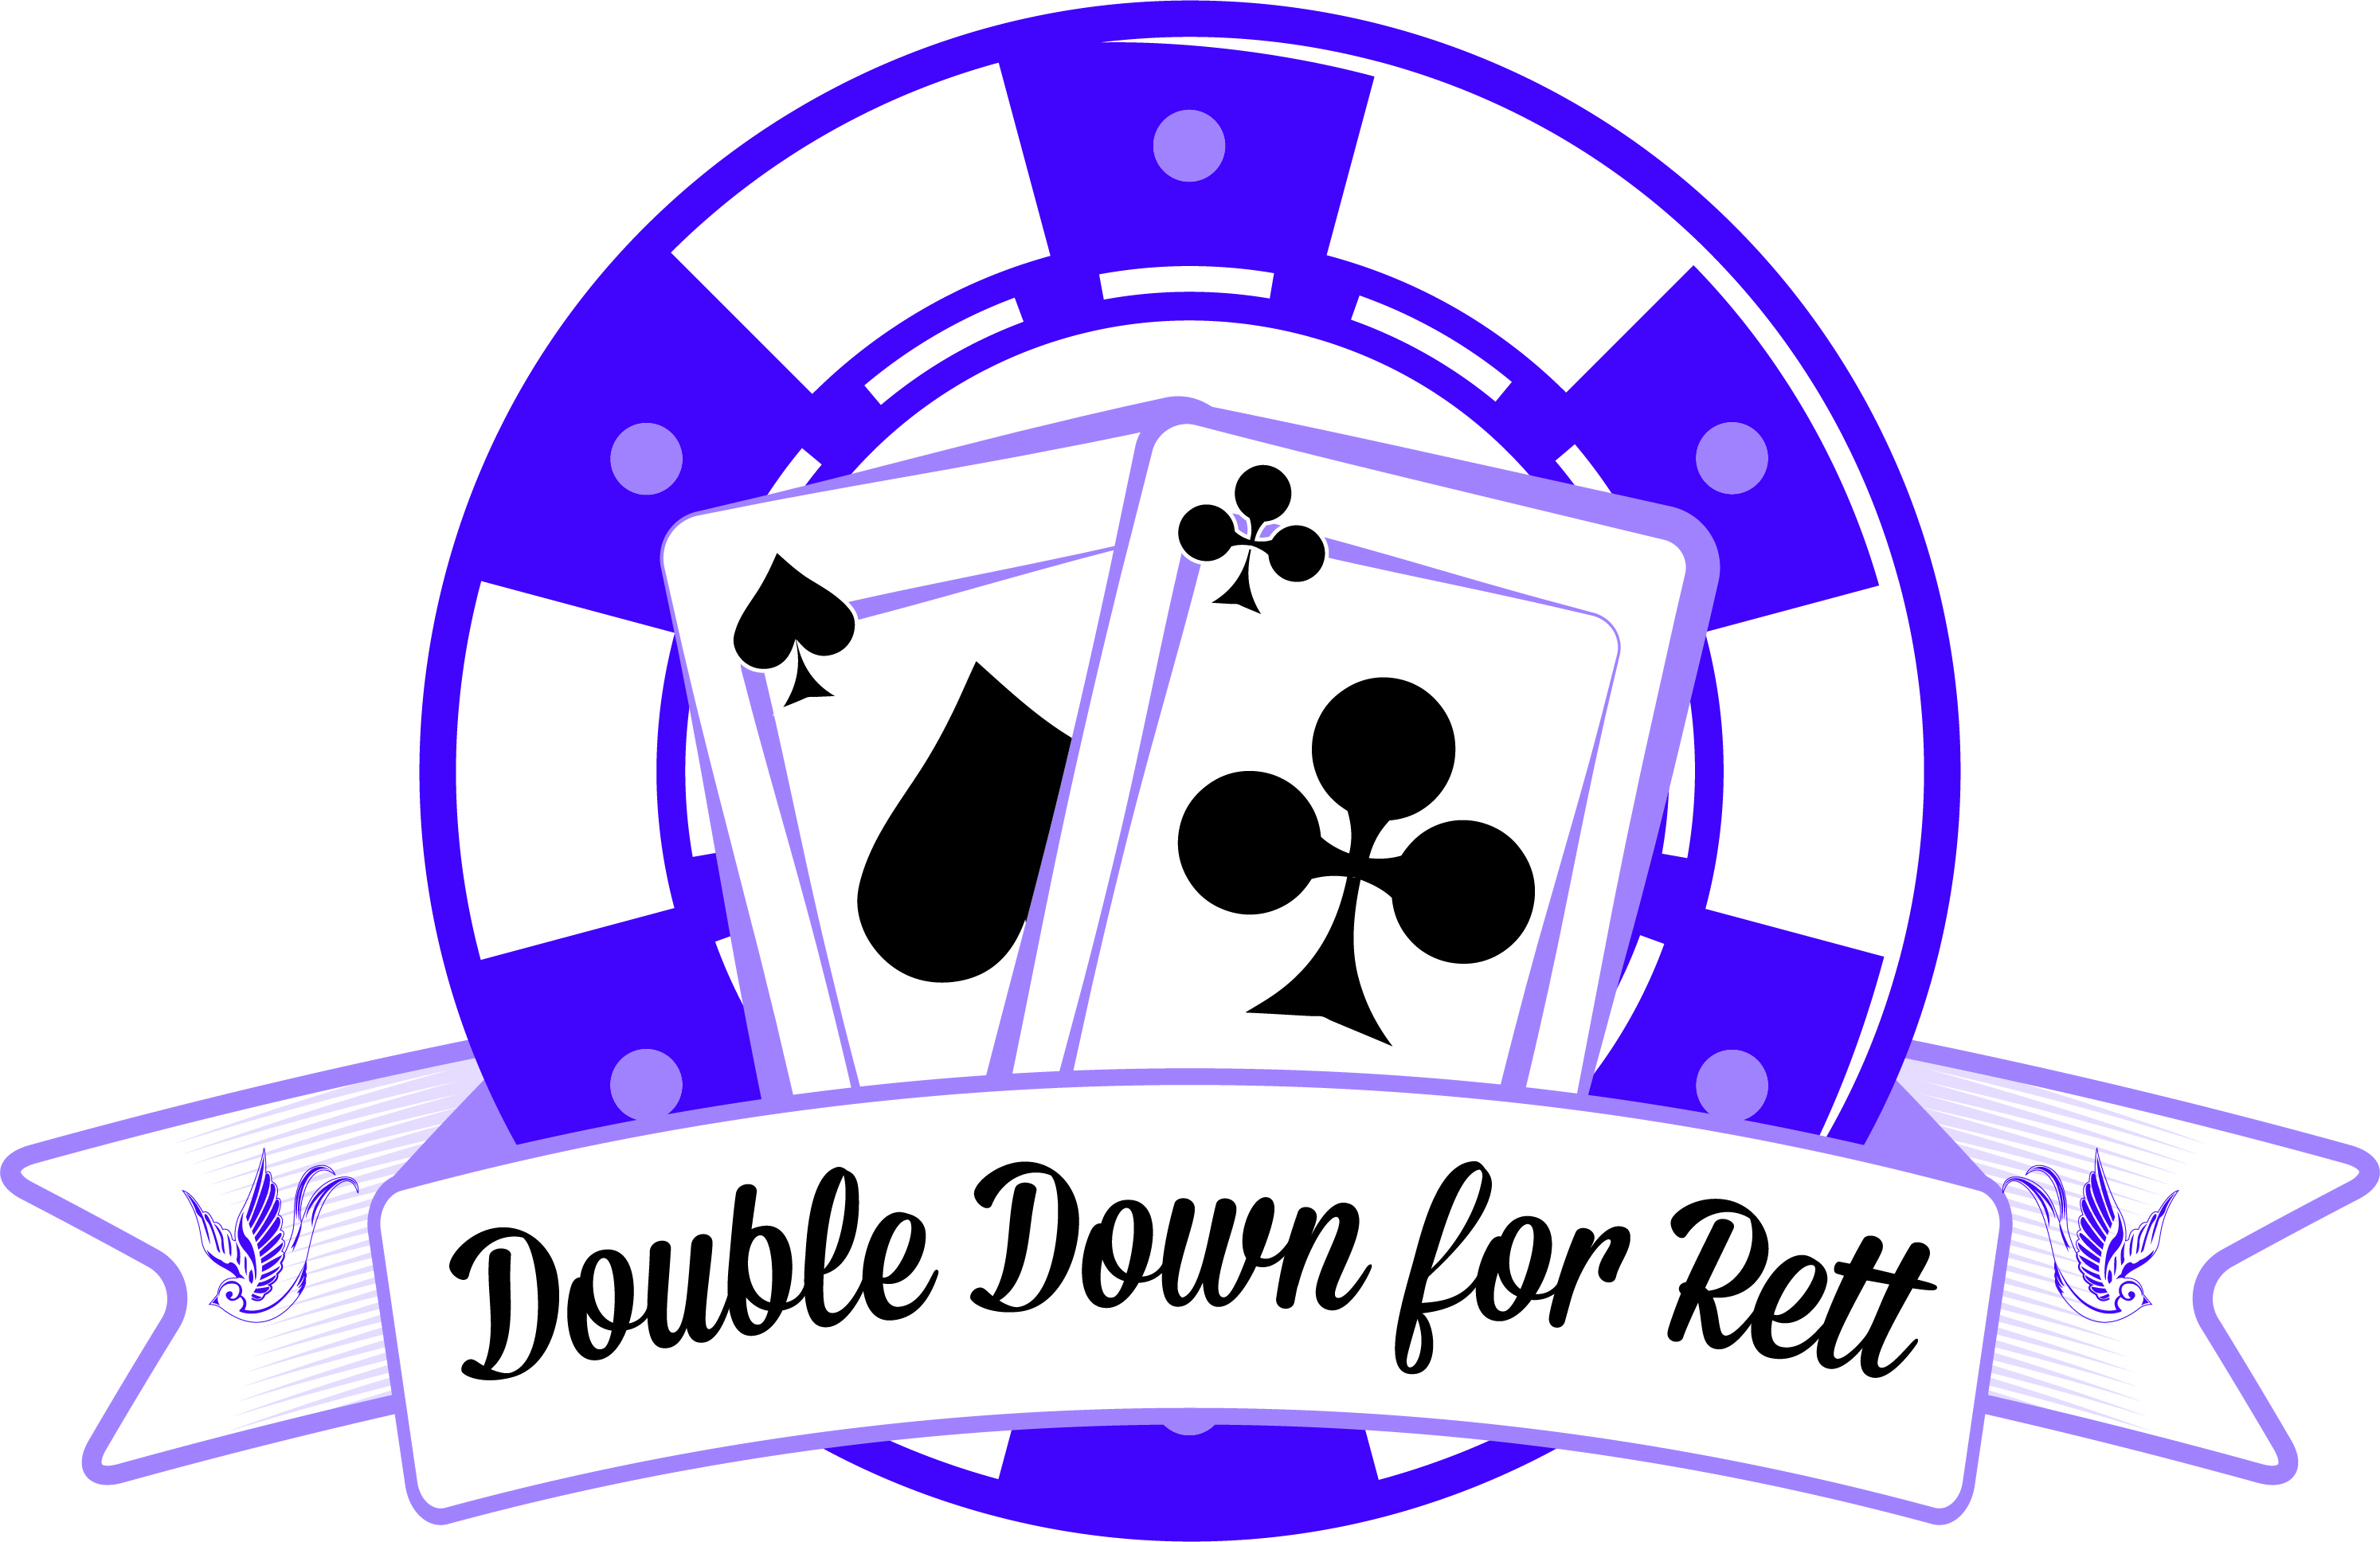 Double Down for Rett Logo.jpg